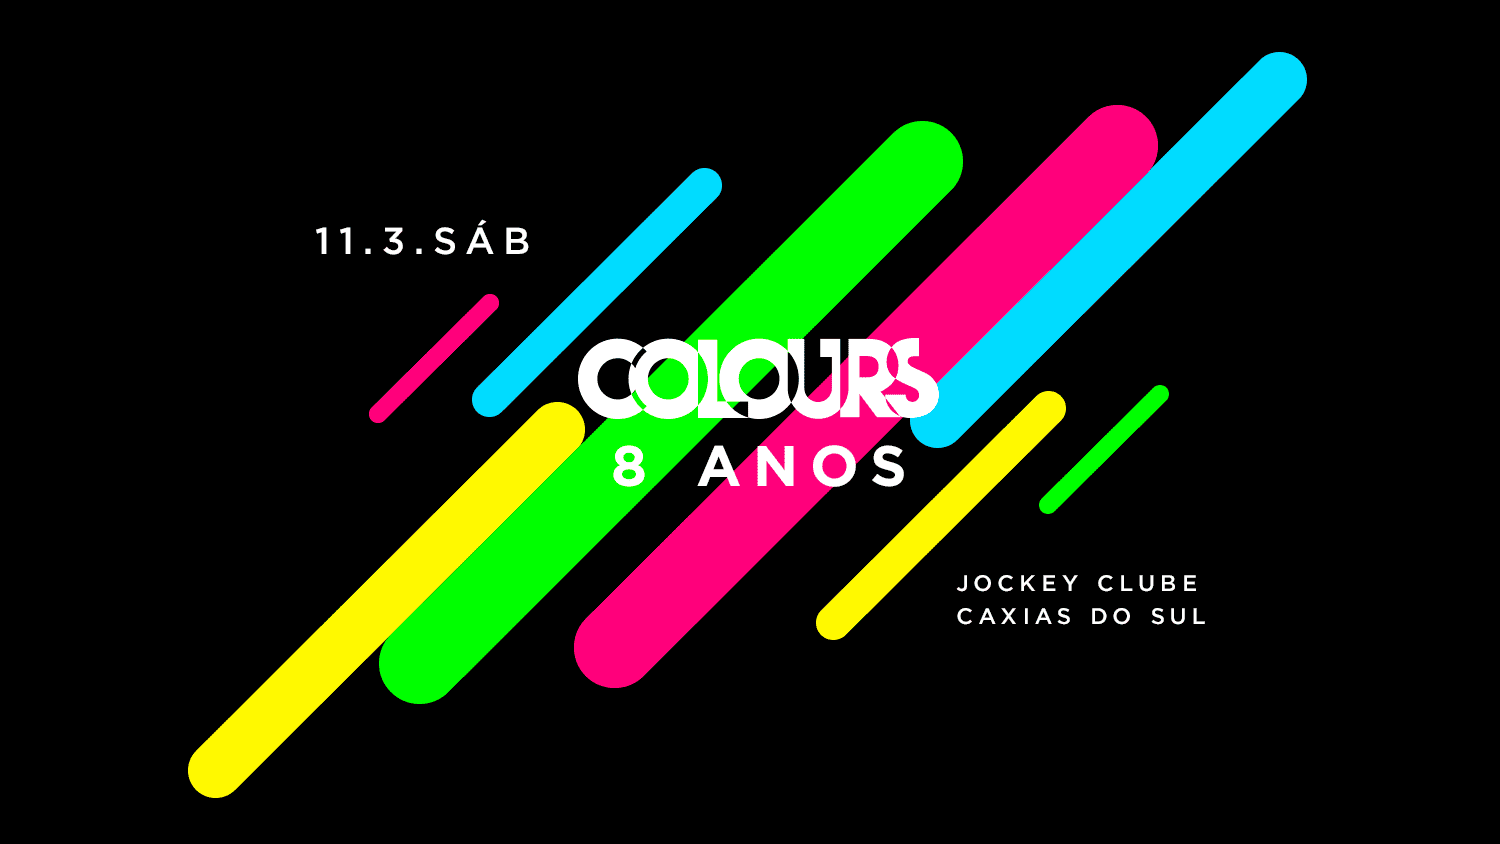 Comemoração de 8 anos da festa Colours em Caxias do Sul